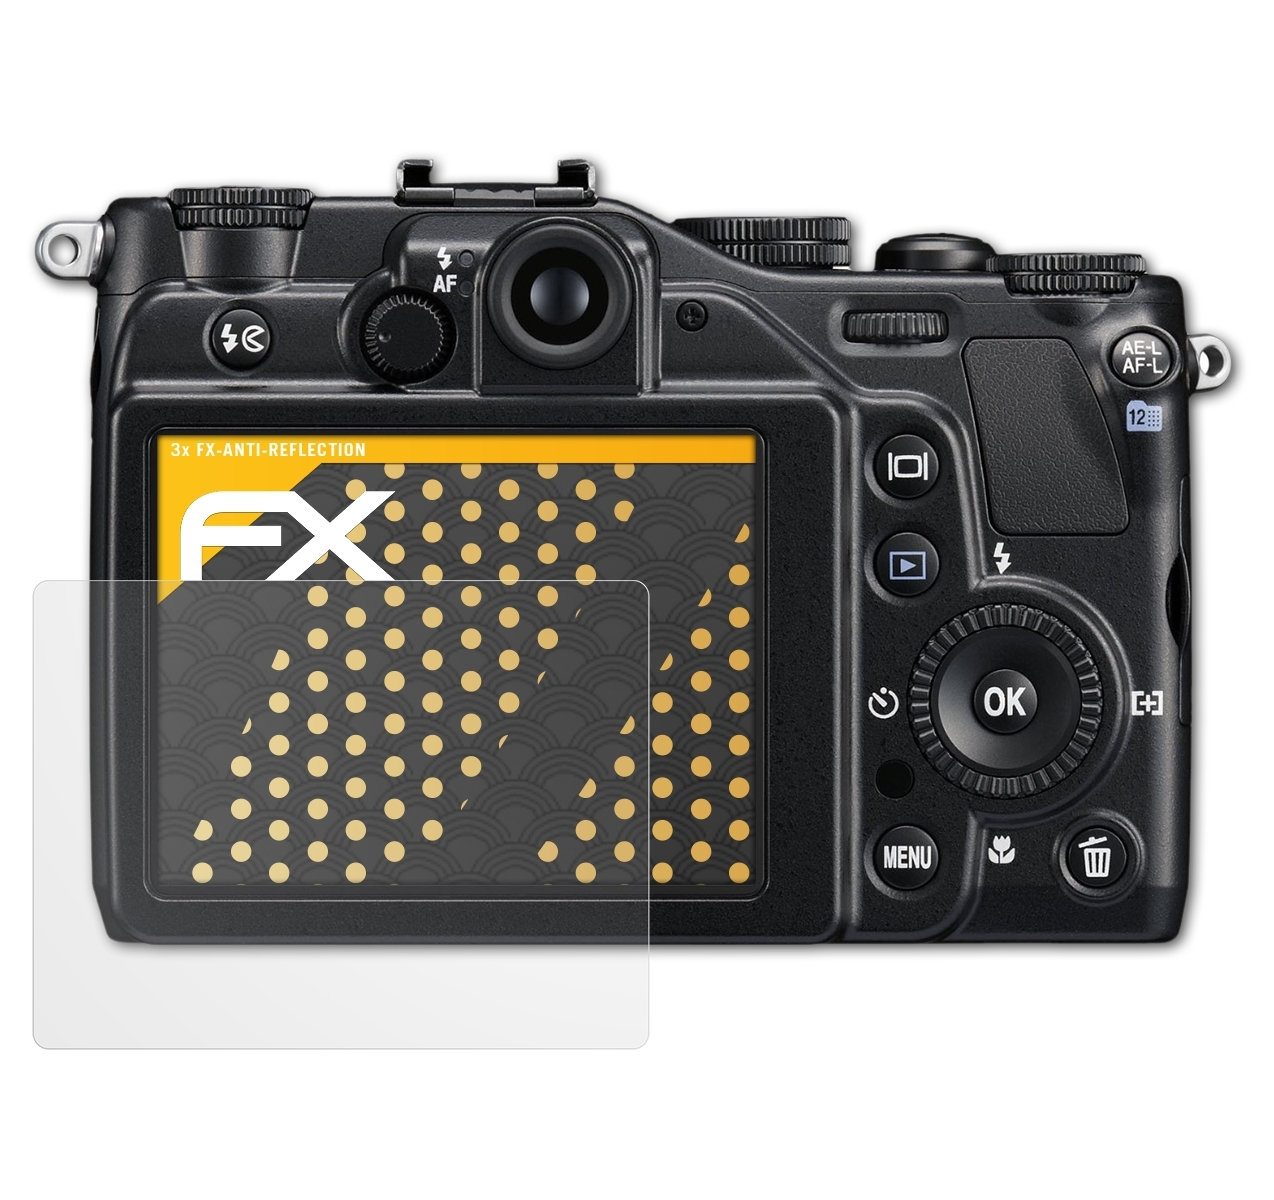 Nikon Displayschutz(für ATFOLIX Coolpix 3x P7000) FX-Antireflex